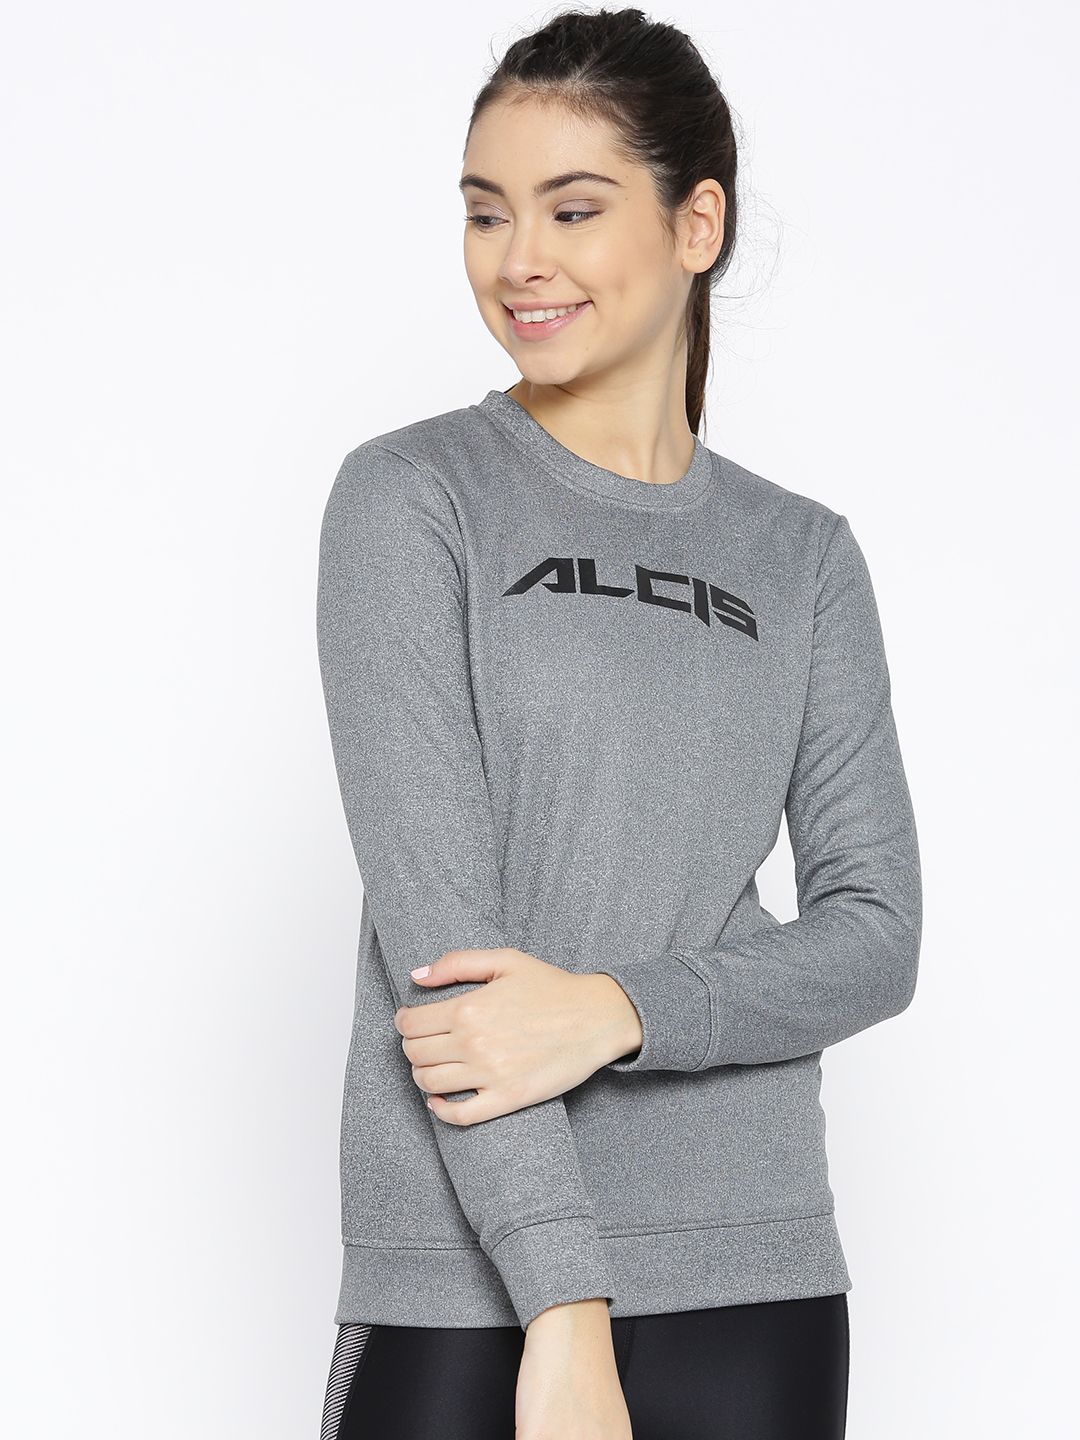 Alcis Women Grey Melange Solid Sweatshirt Price in India